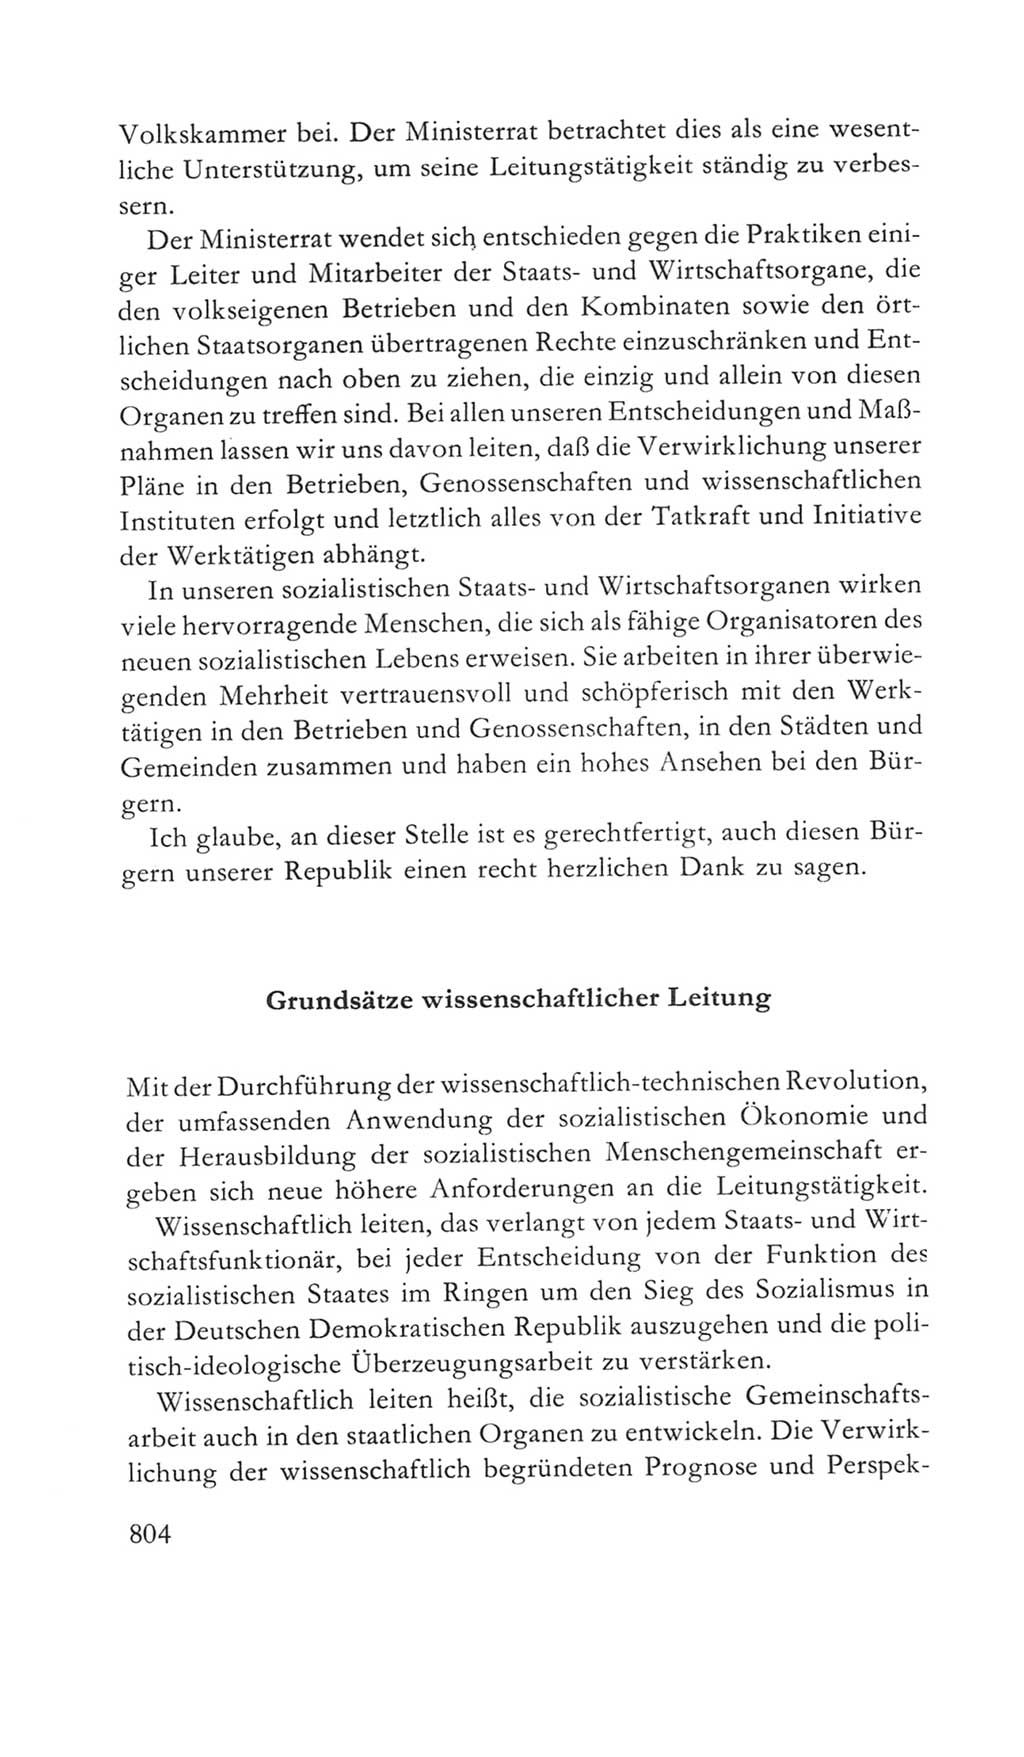 Volkskammer (VK) der Deutschen Demokratischen Republik (DDR) 5. Wahlperiode 1967-1971, Seite 804 (VK. DDR 5. WP. 1967-1971, S. 804)